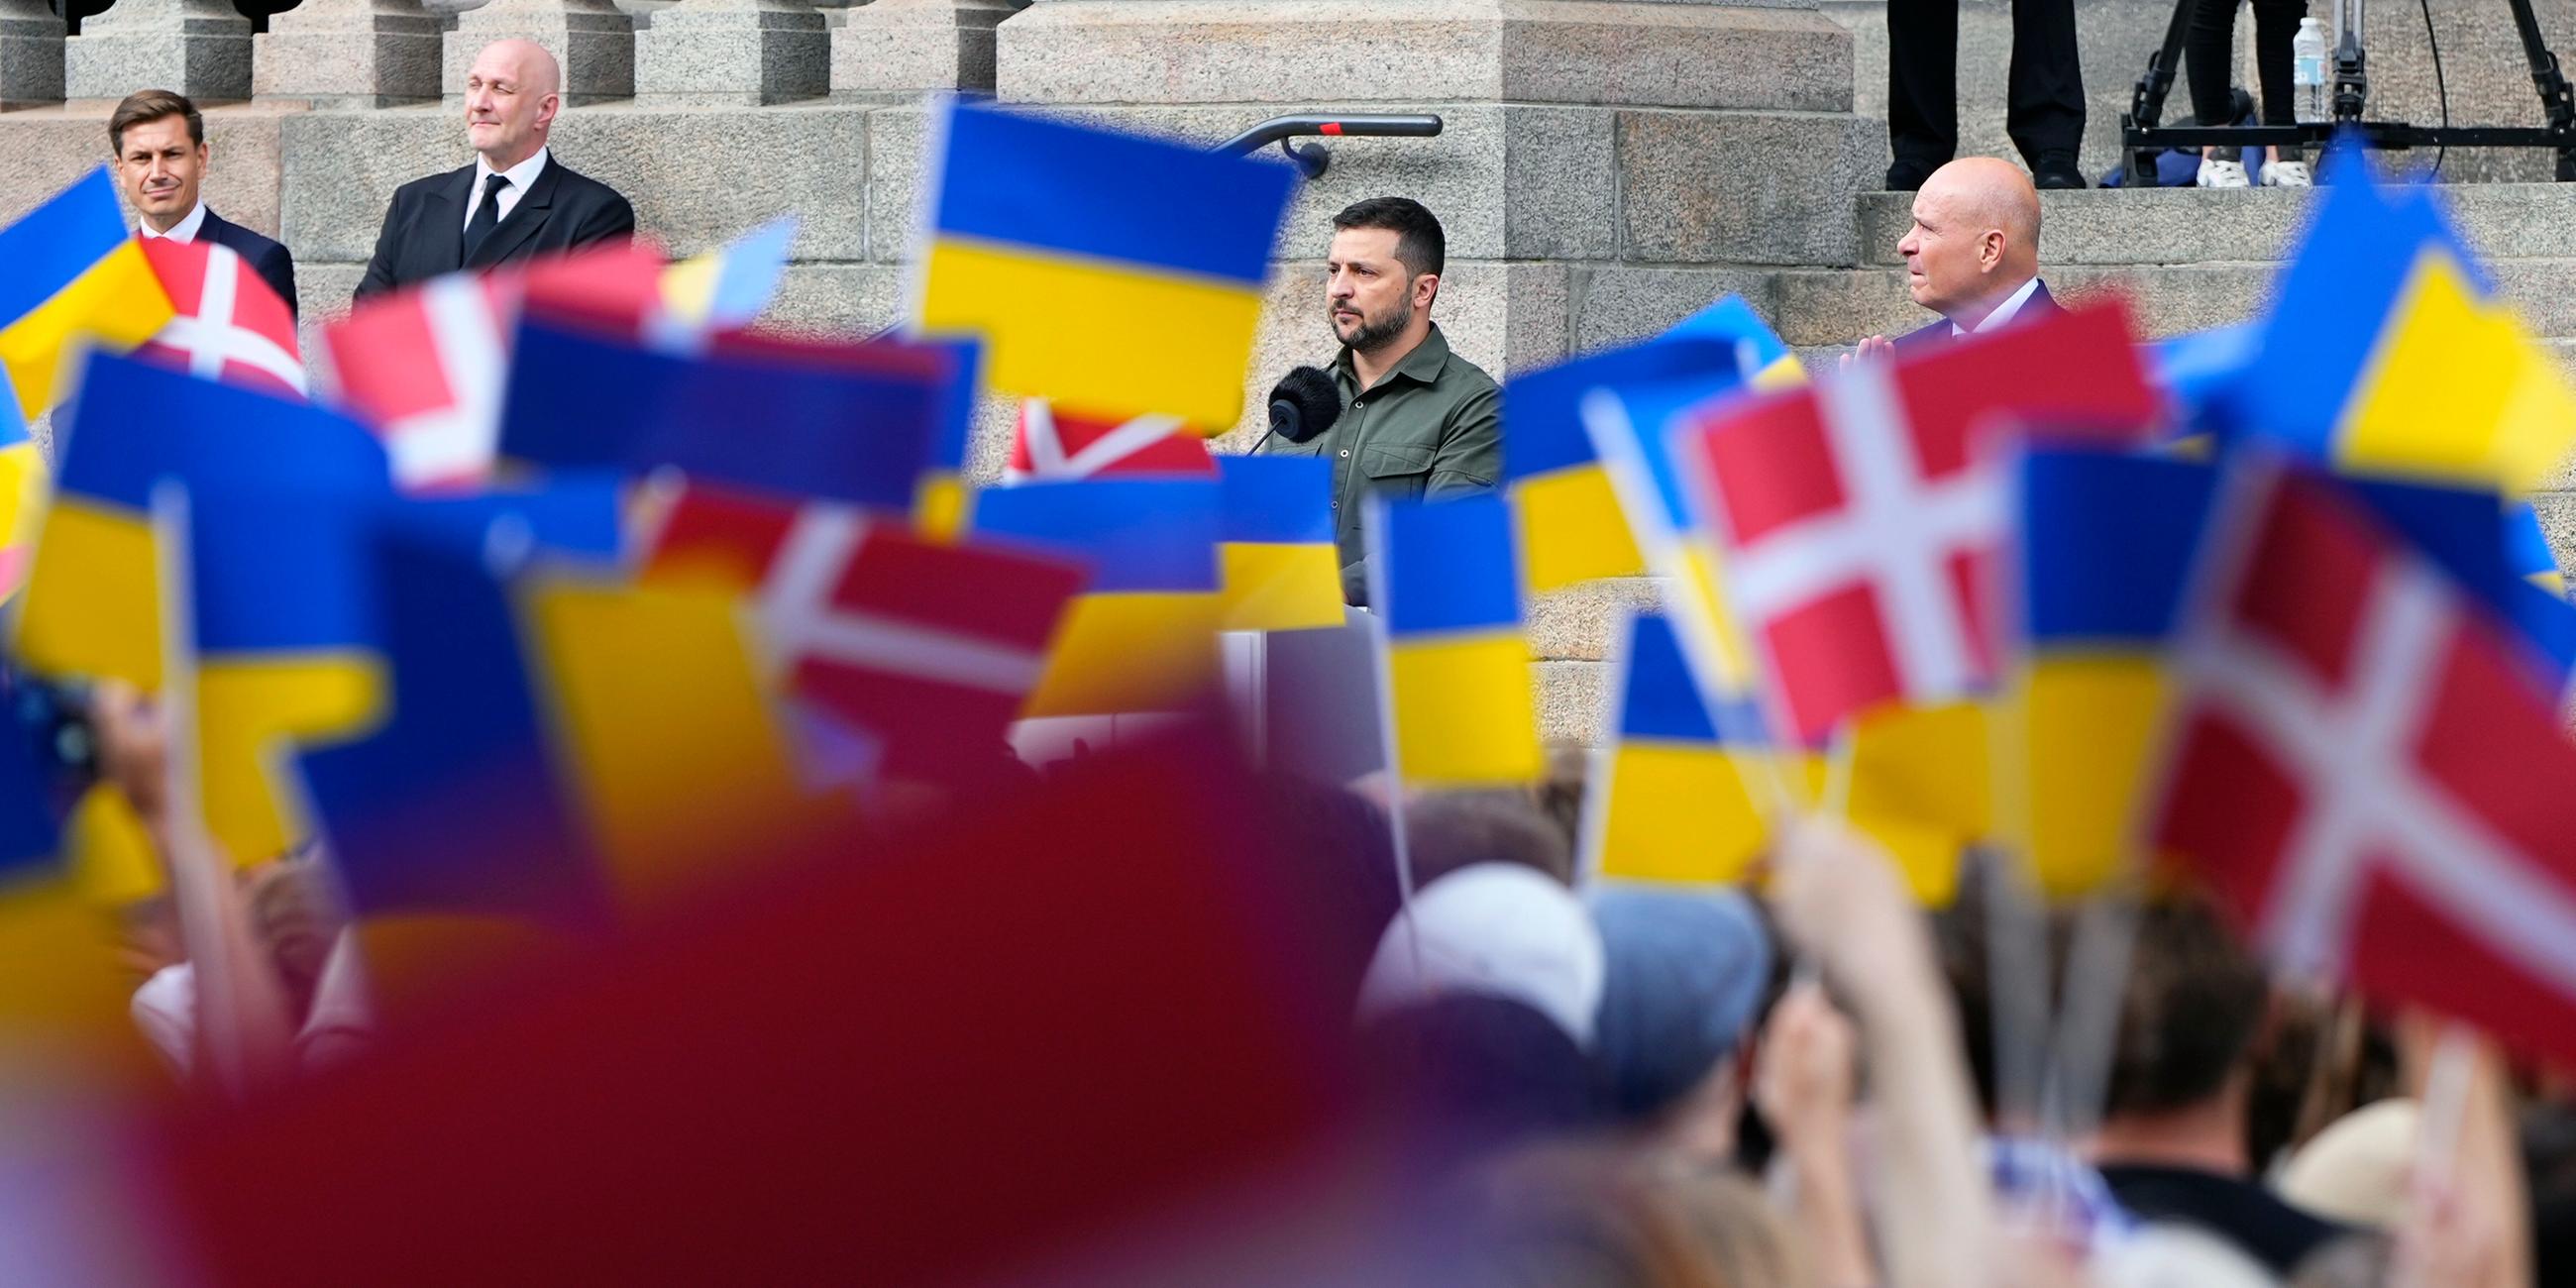 Dänemark, Kopenhagen: Wolodymyr Selenskyj, Präsident der Ukraine, spricht auf den Stufen von Schloss Christiansborg, dem Sitz des dänischen Parlaments, zum dänischen Volk.